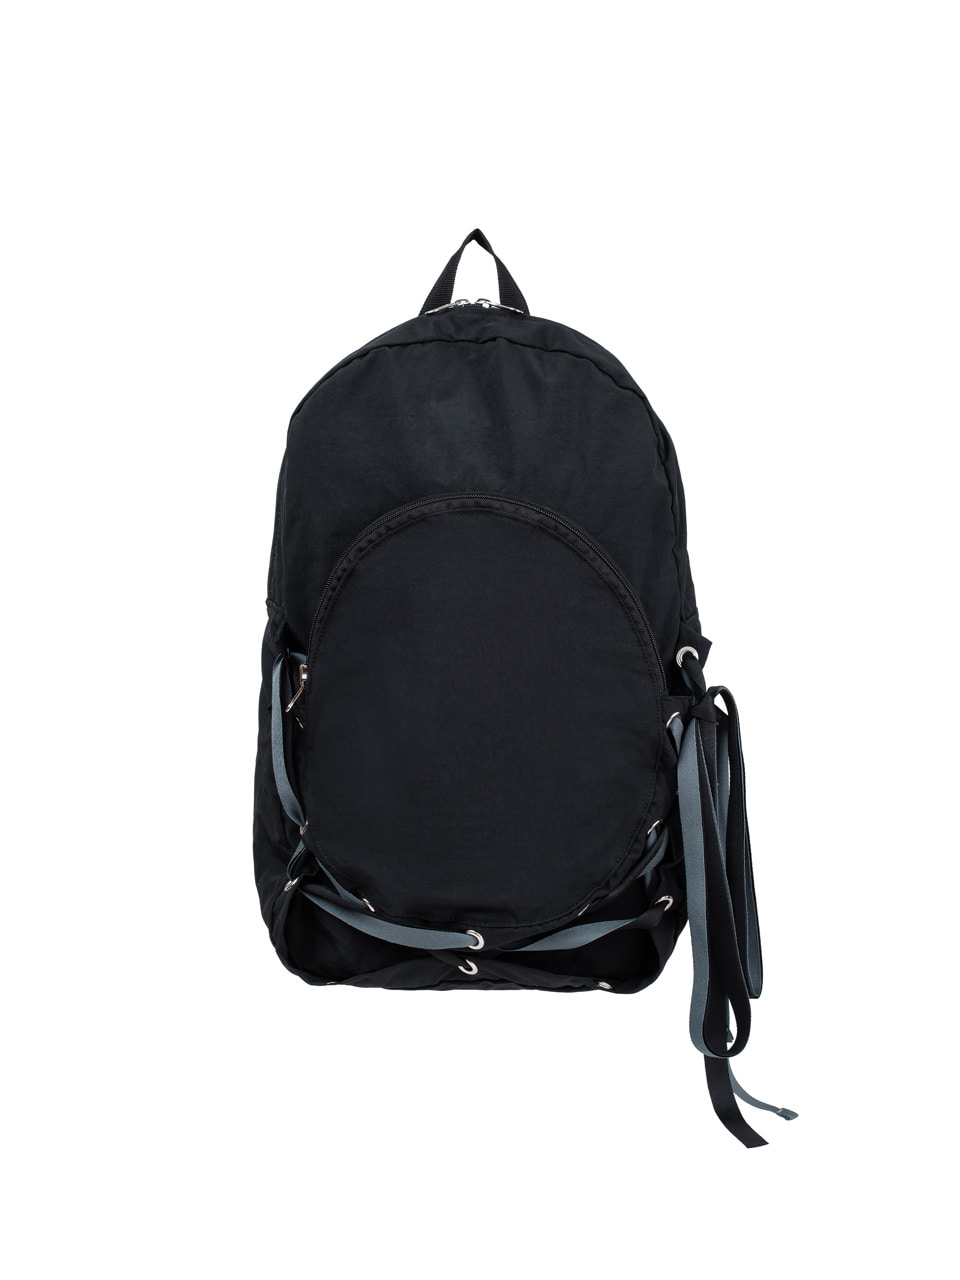 Nest Backpack - Black